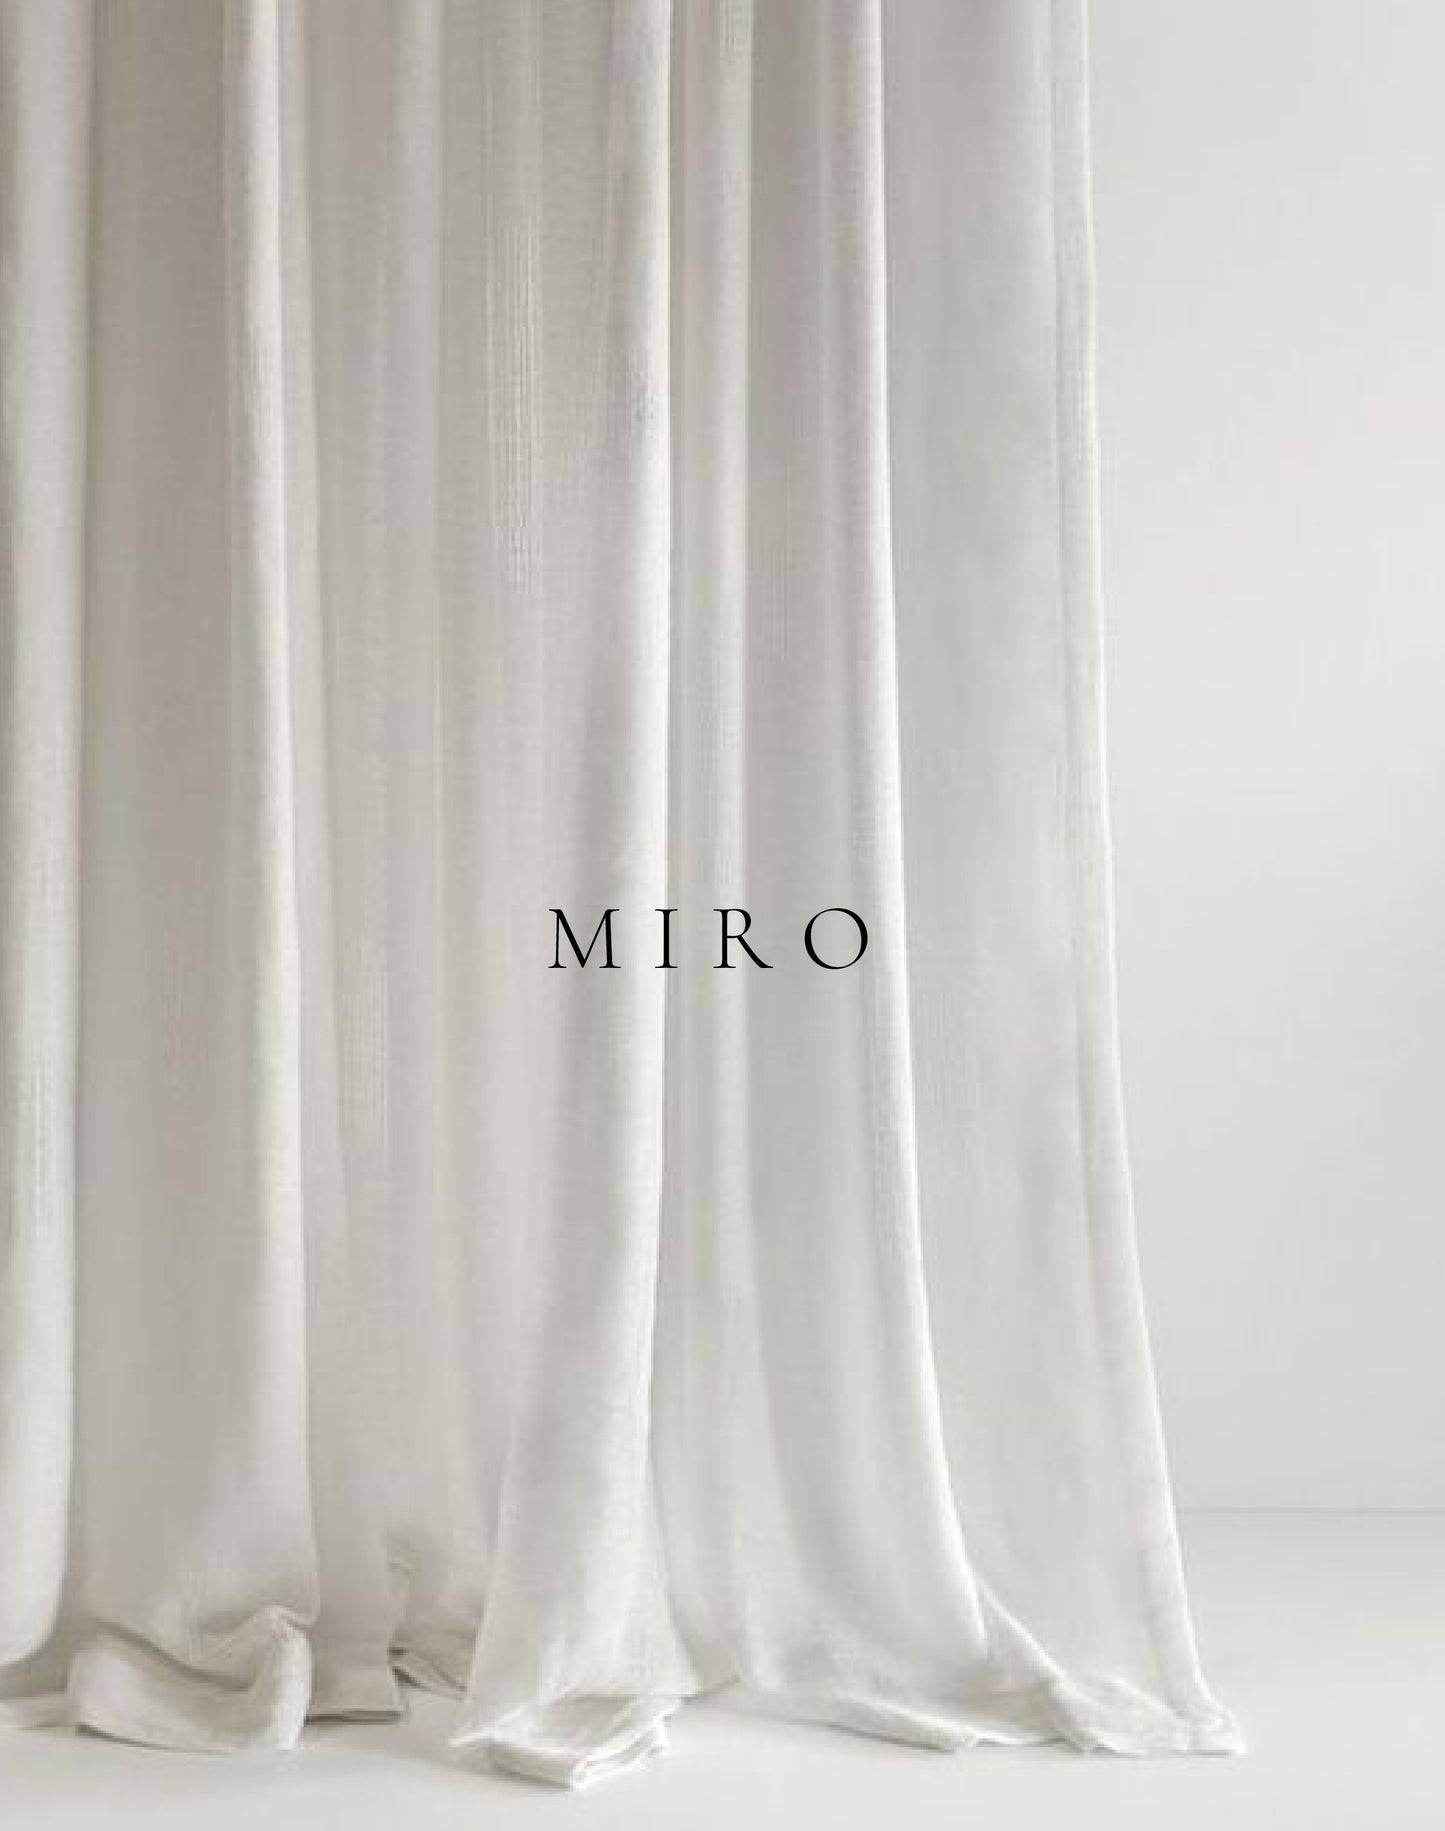 Miro Branding Set